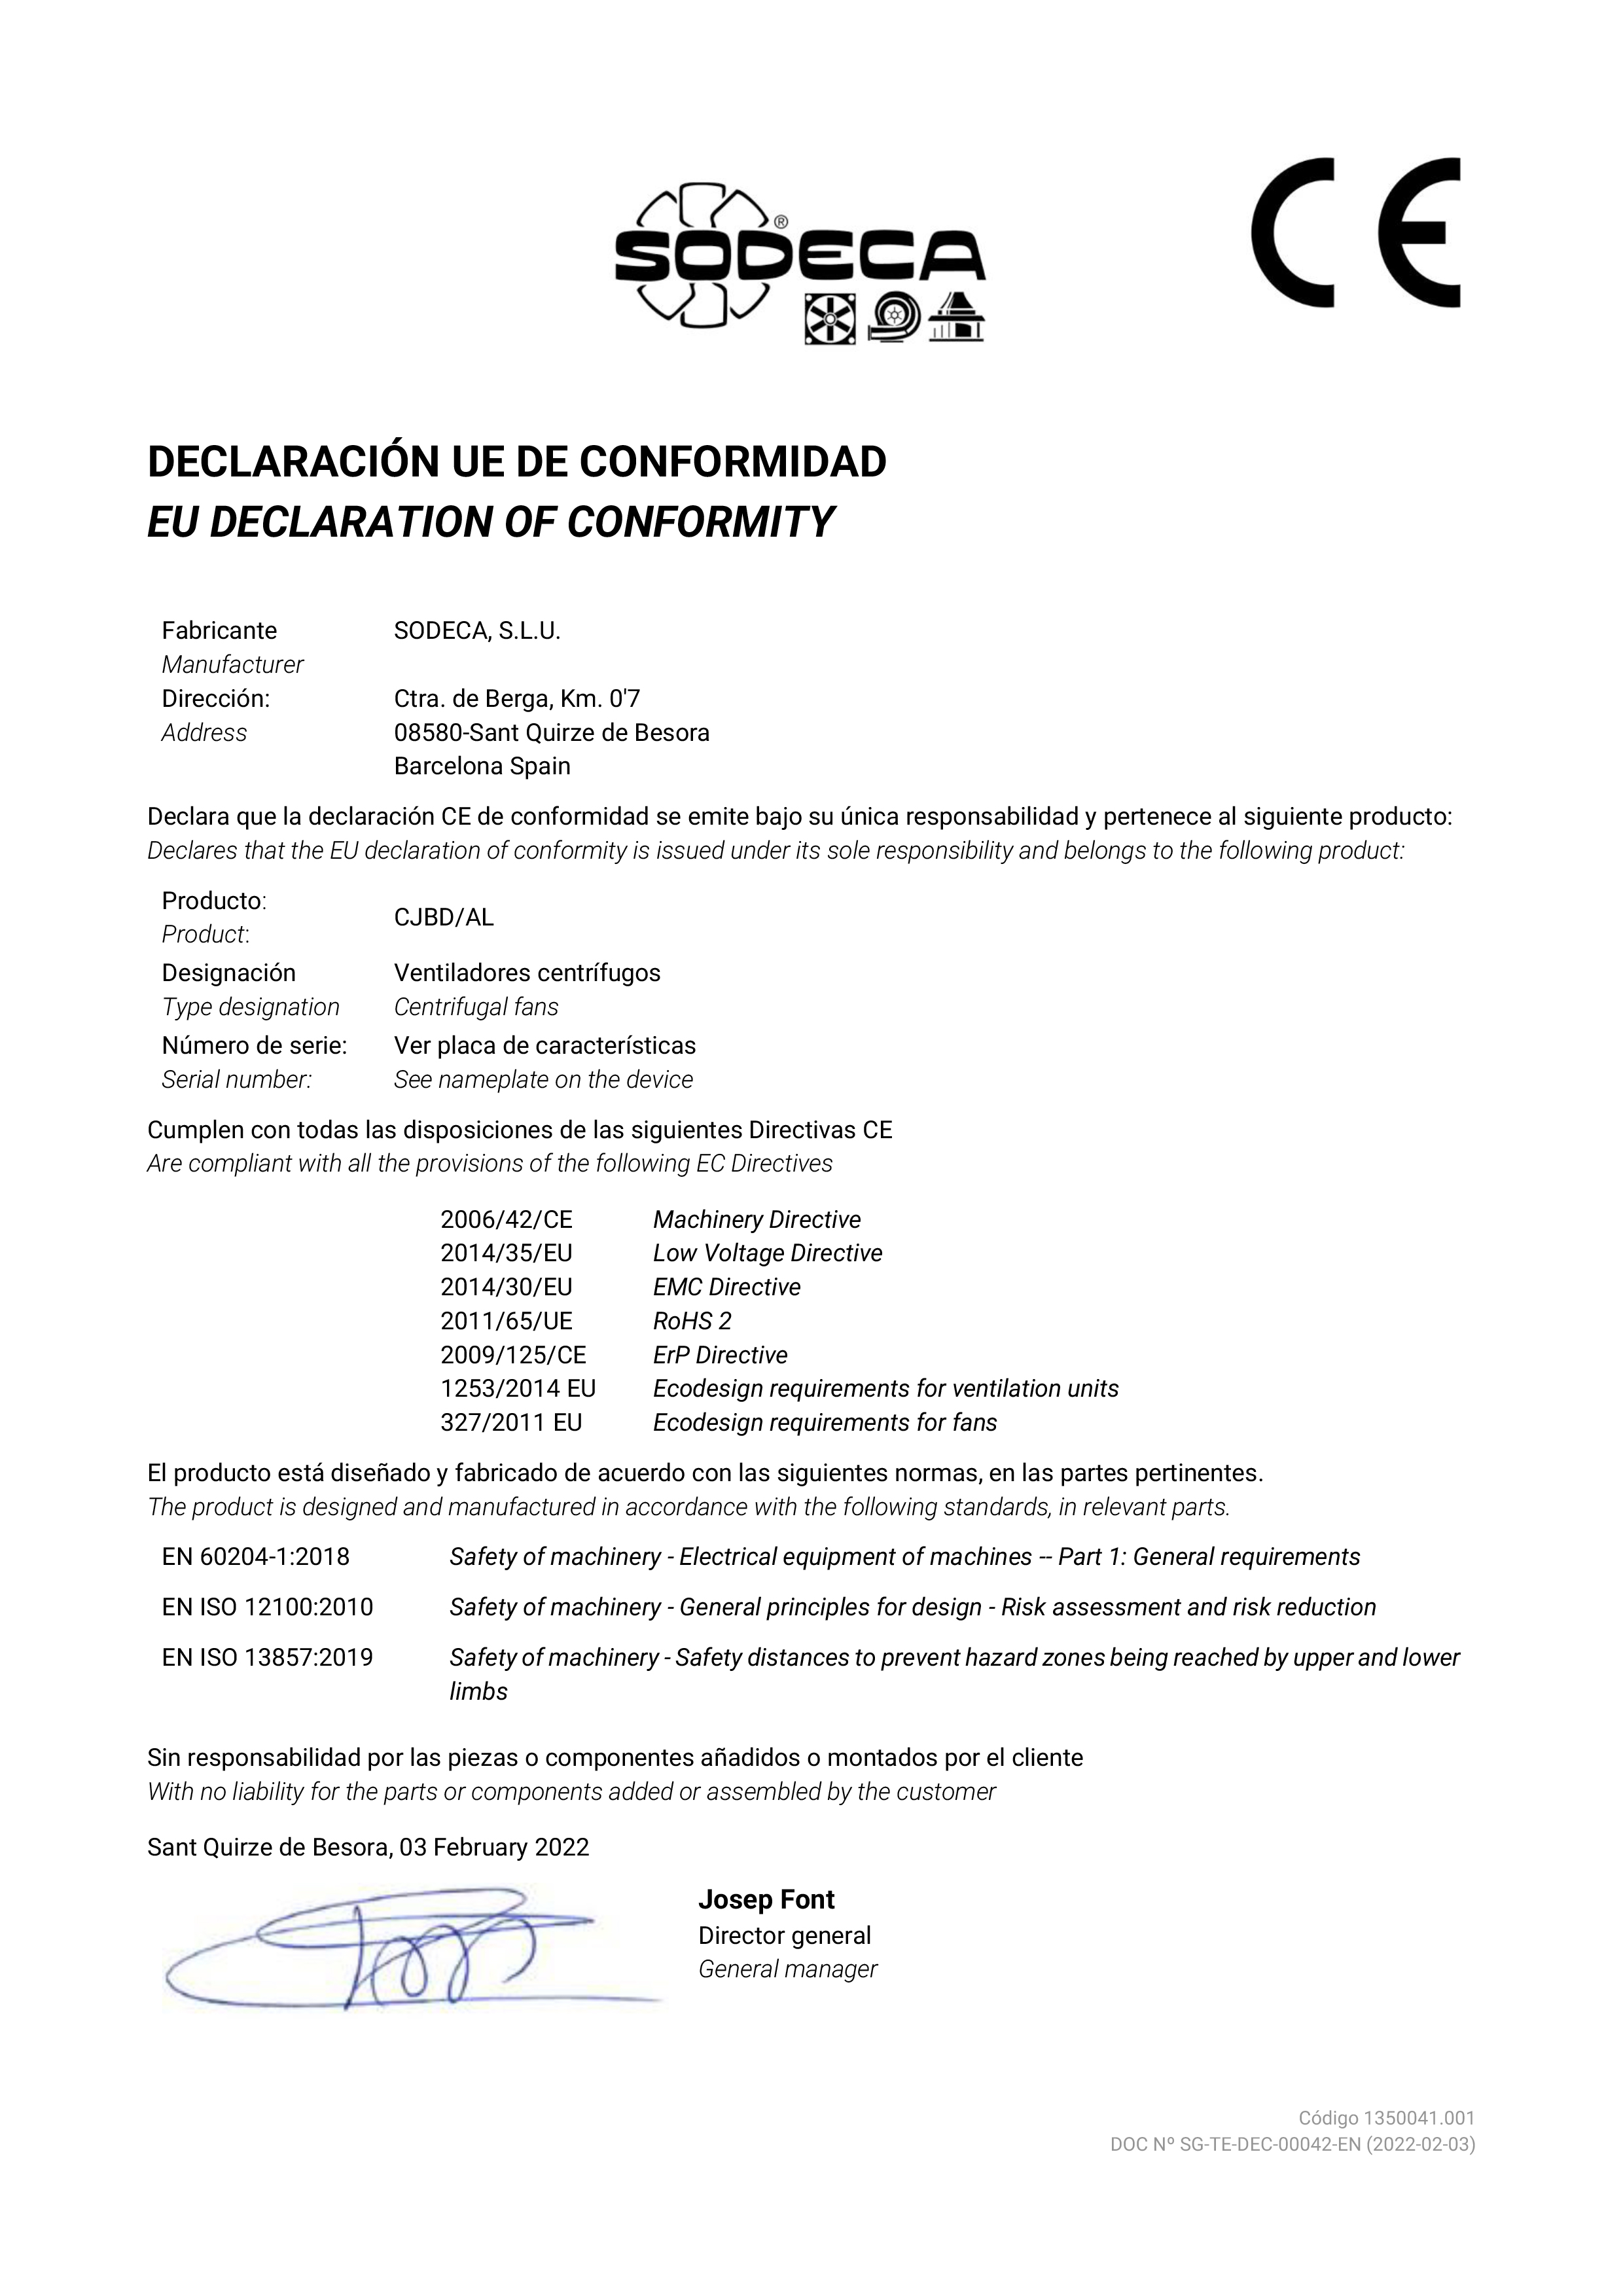 DECLARATION of CONFORMITY "CJBD/AL"